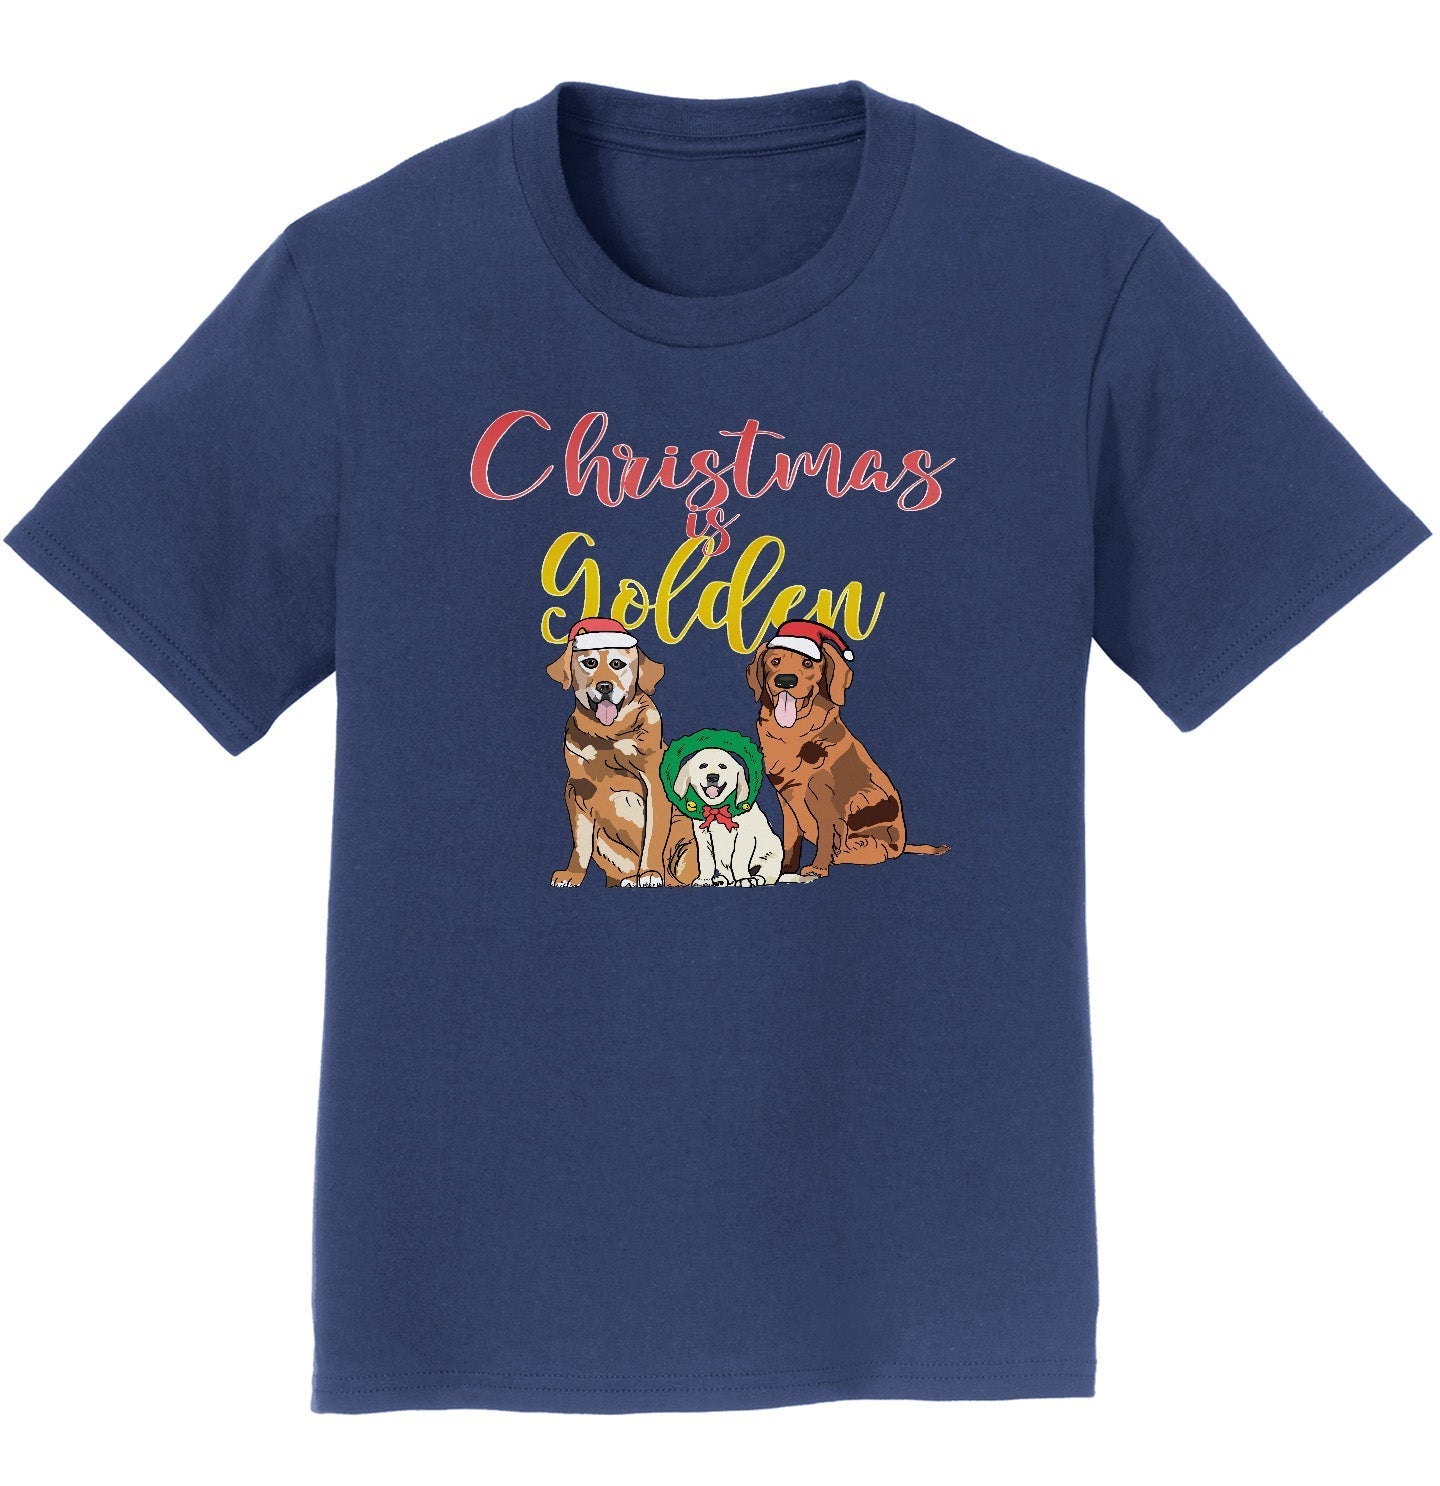 GRRMF Christmas Is Golden - Kids' Unisex T-Shirt